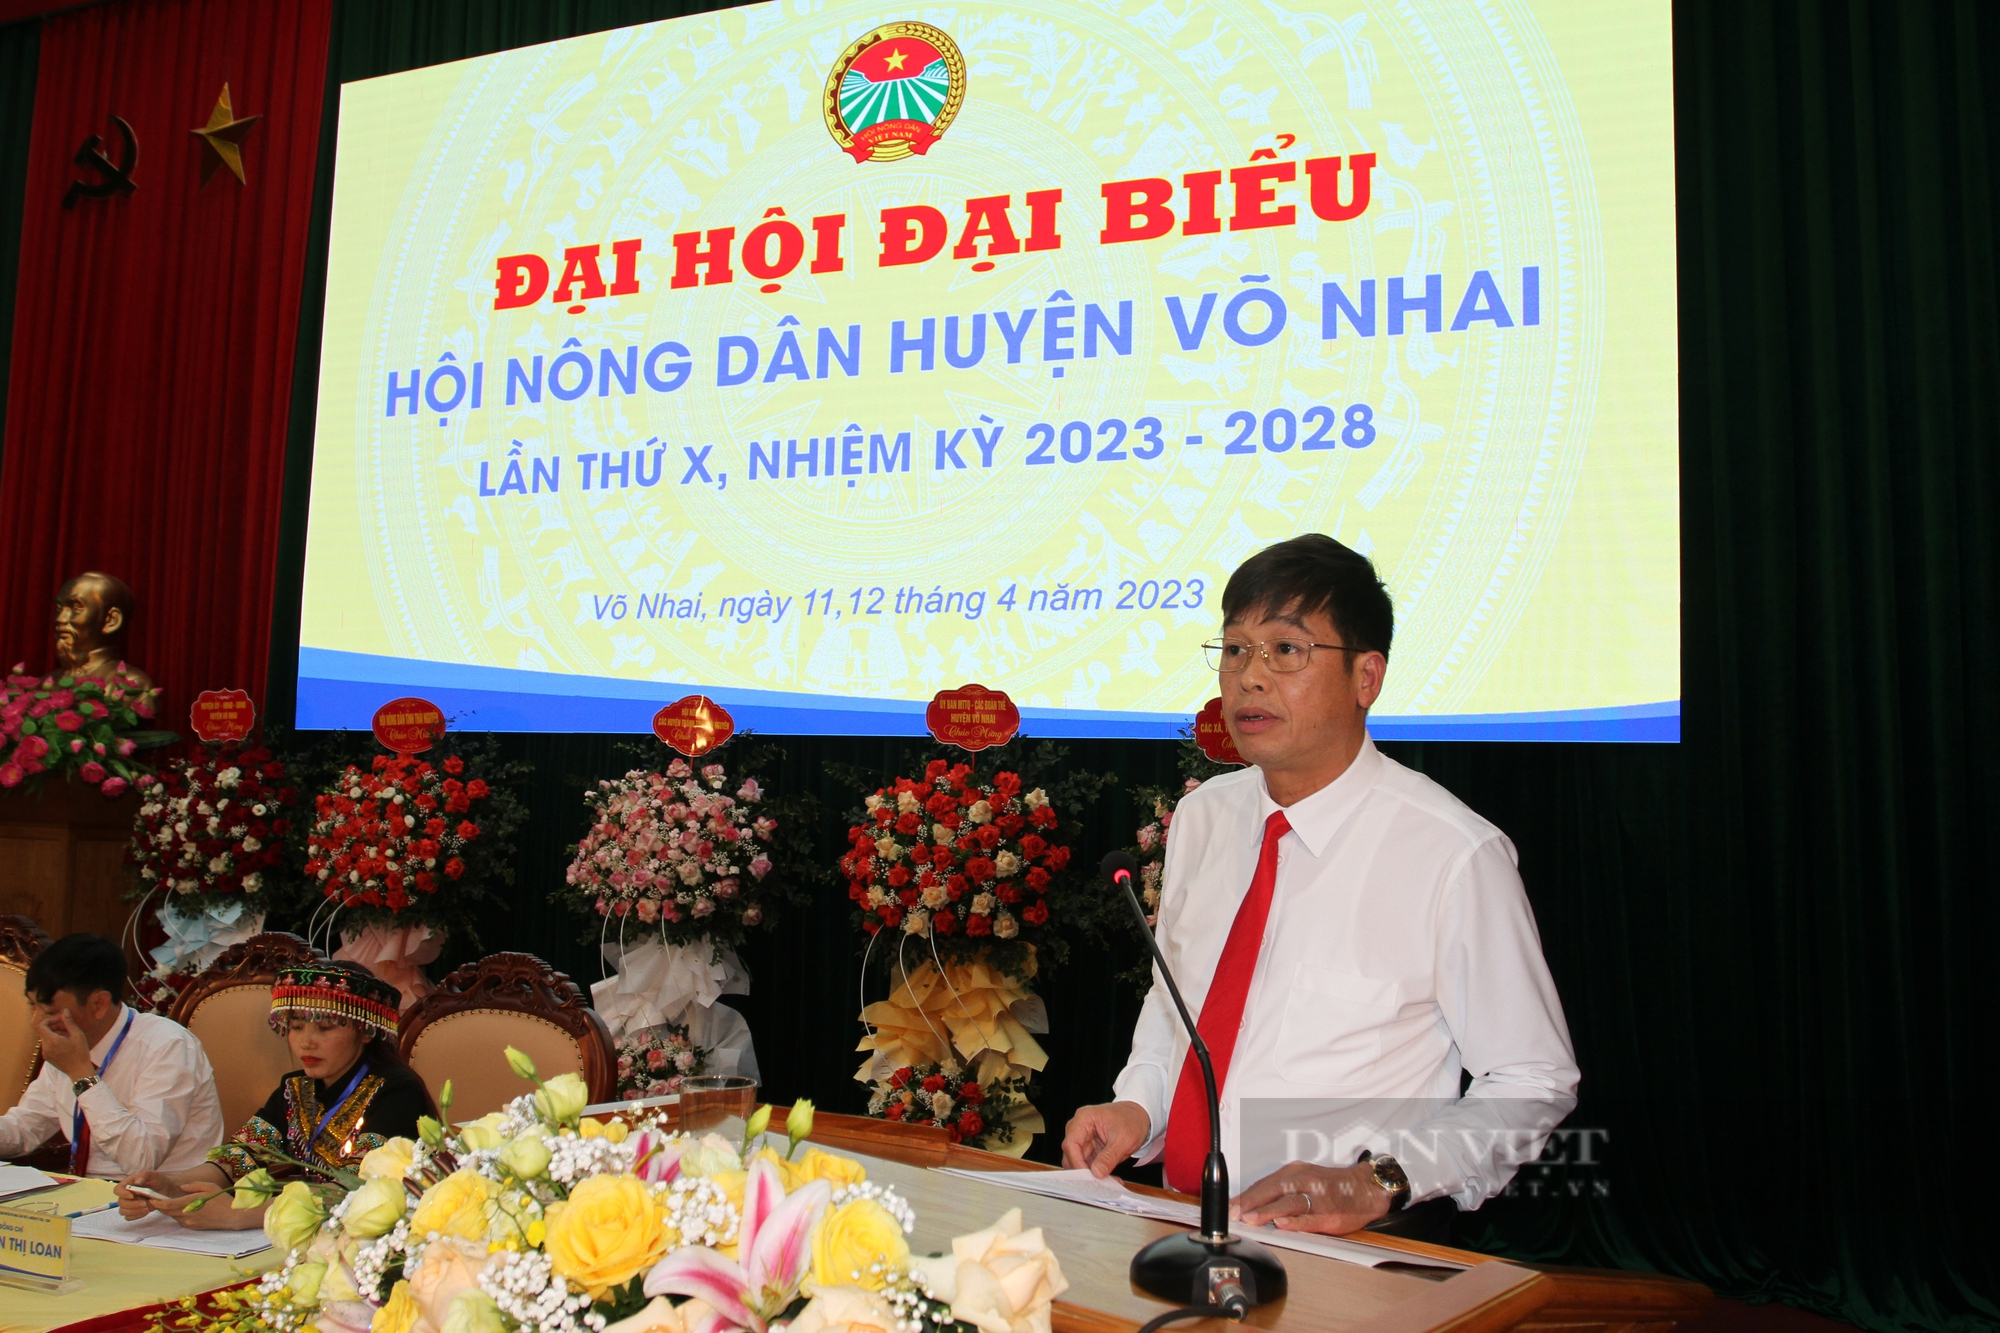 Thái Nguyên: Bầu Ban chấp hành Hội nông dân huyện Võ Nhai lần thứ X, nhiệm kỳ 2023 – 2028 với 21 người - Ảnh 5.